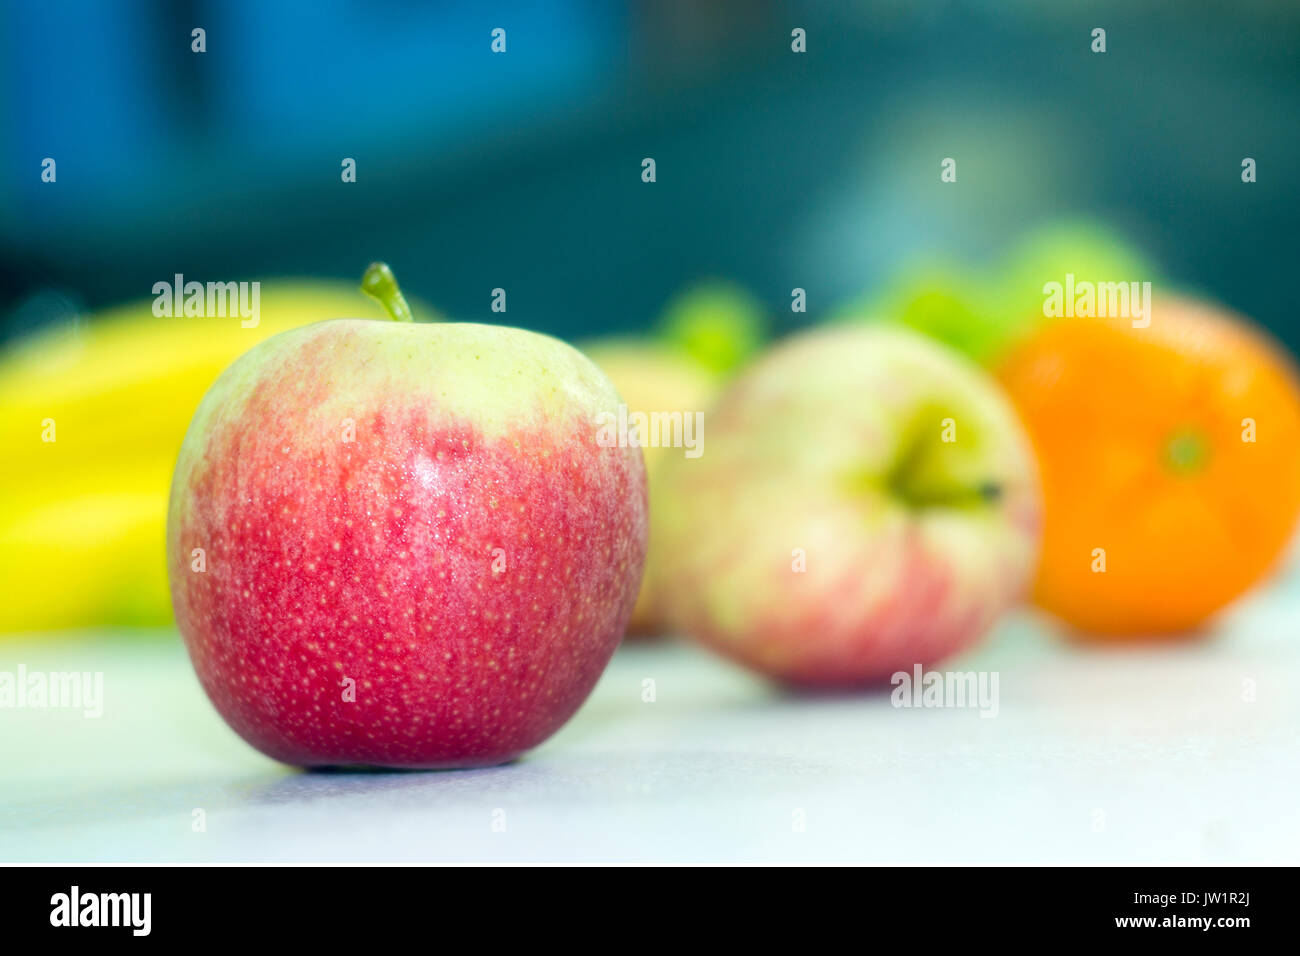 Manzana roja en meza con otras frutas desenfocadas, alimento saludable y natural con vitamines, baja en prototype, y jugosa apetecible, de clima frío Banque D'Images